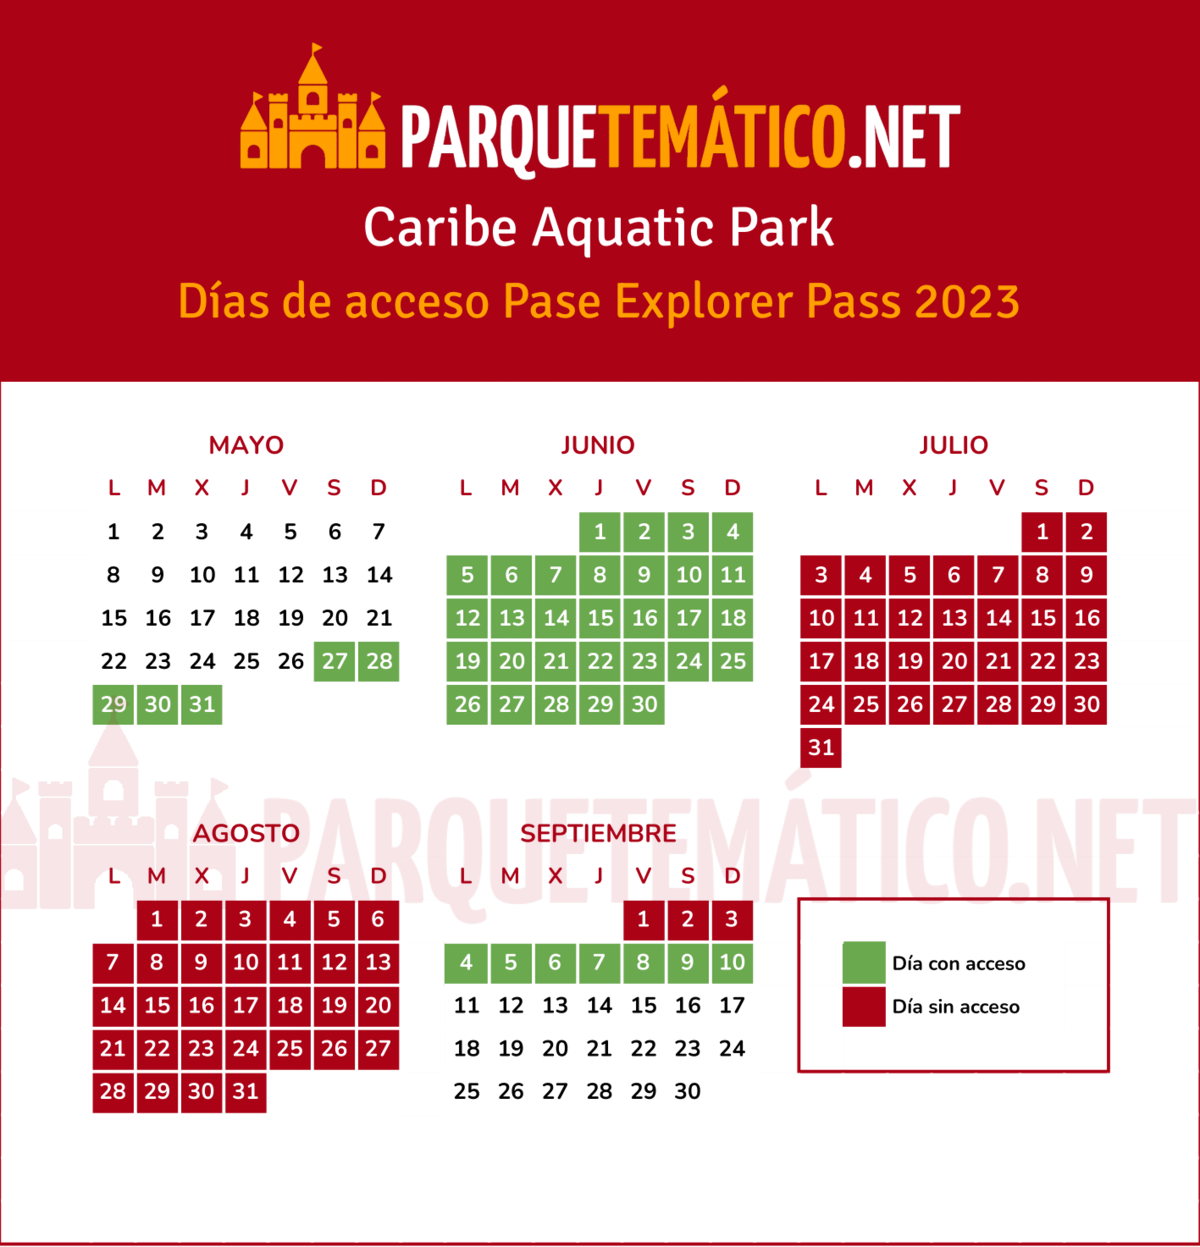 Calendario dias acceso Pase Anual Explorer PortAventura Caribe Aquatic Park 2023